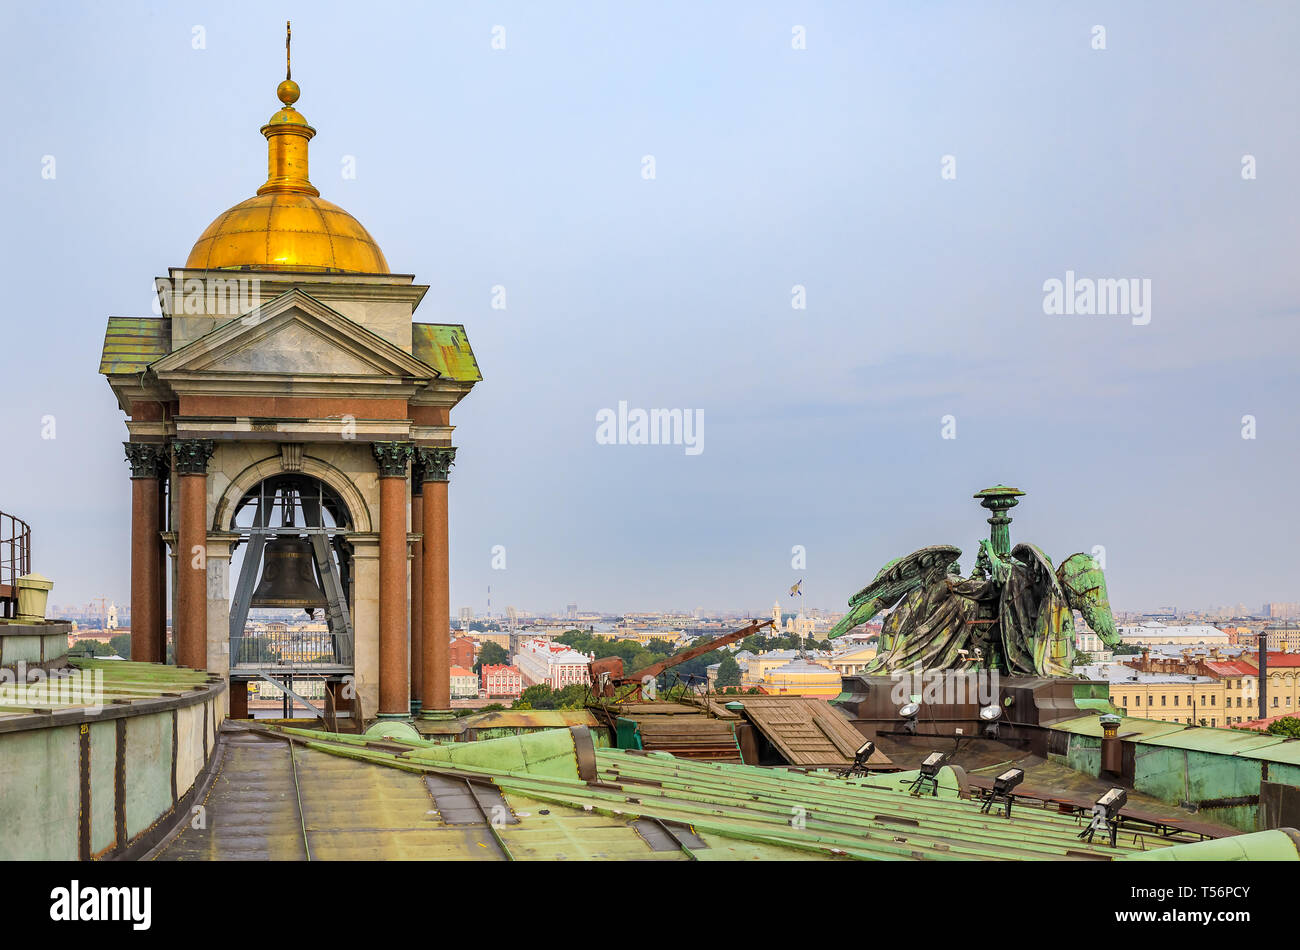 Saint Petersburg, Russie - le 10 septembre 2017 : vue sur le clocher et angel les statues sur le toit de Saint Isaac's Cathédrale Orthodoxe Russe sur I Banque D'Images